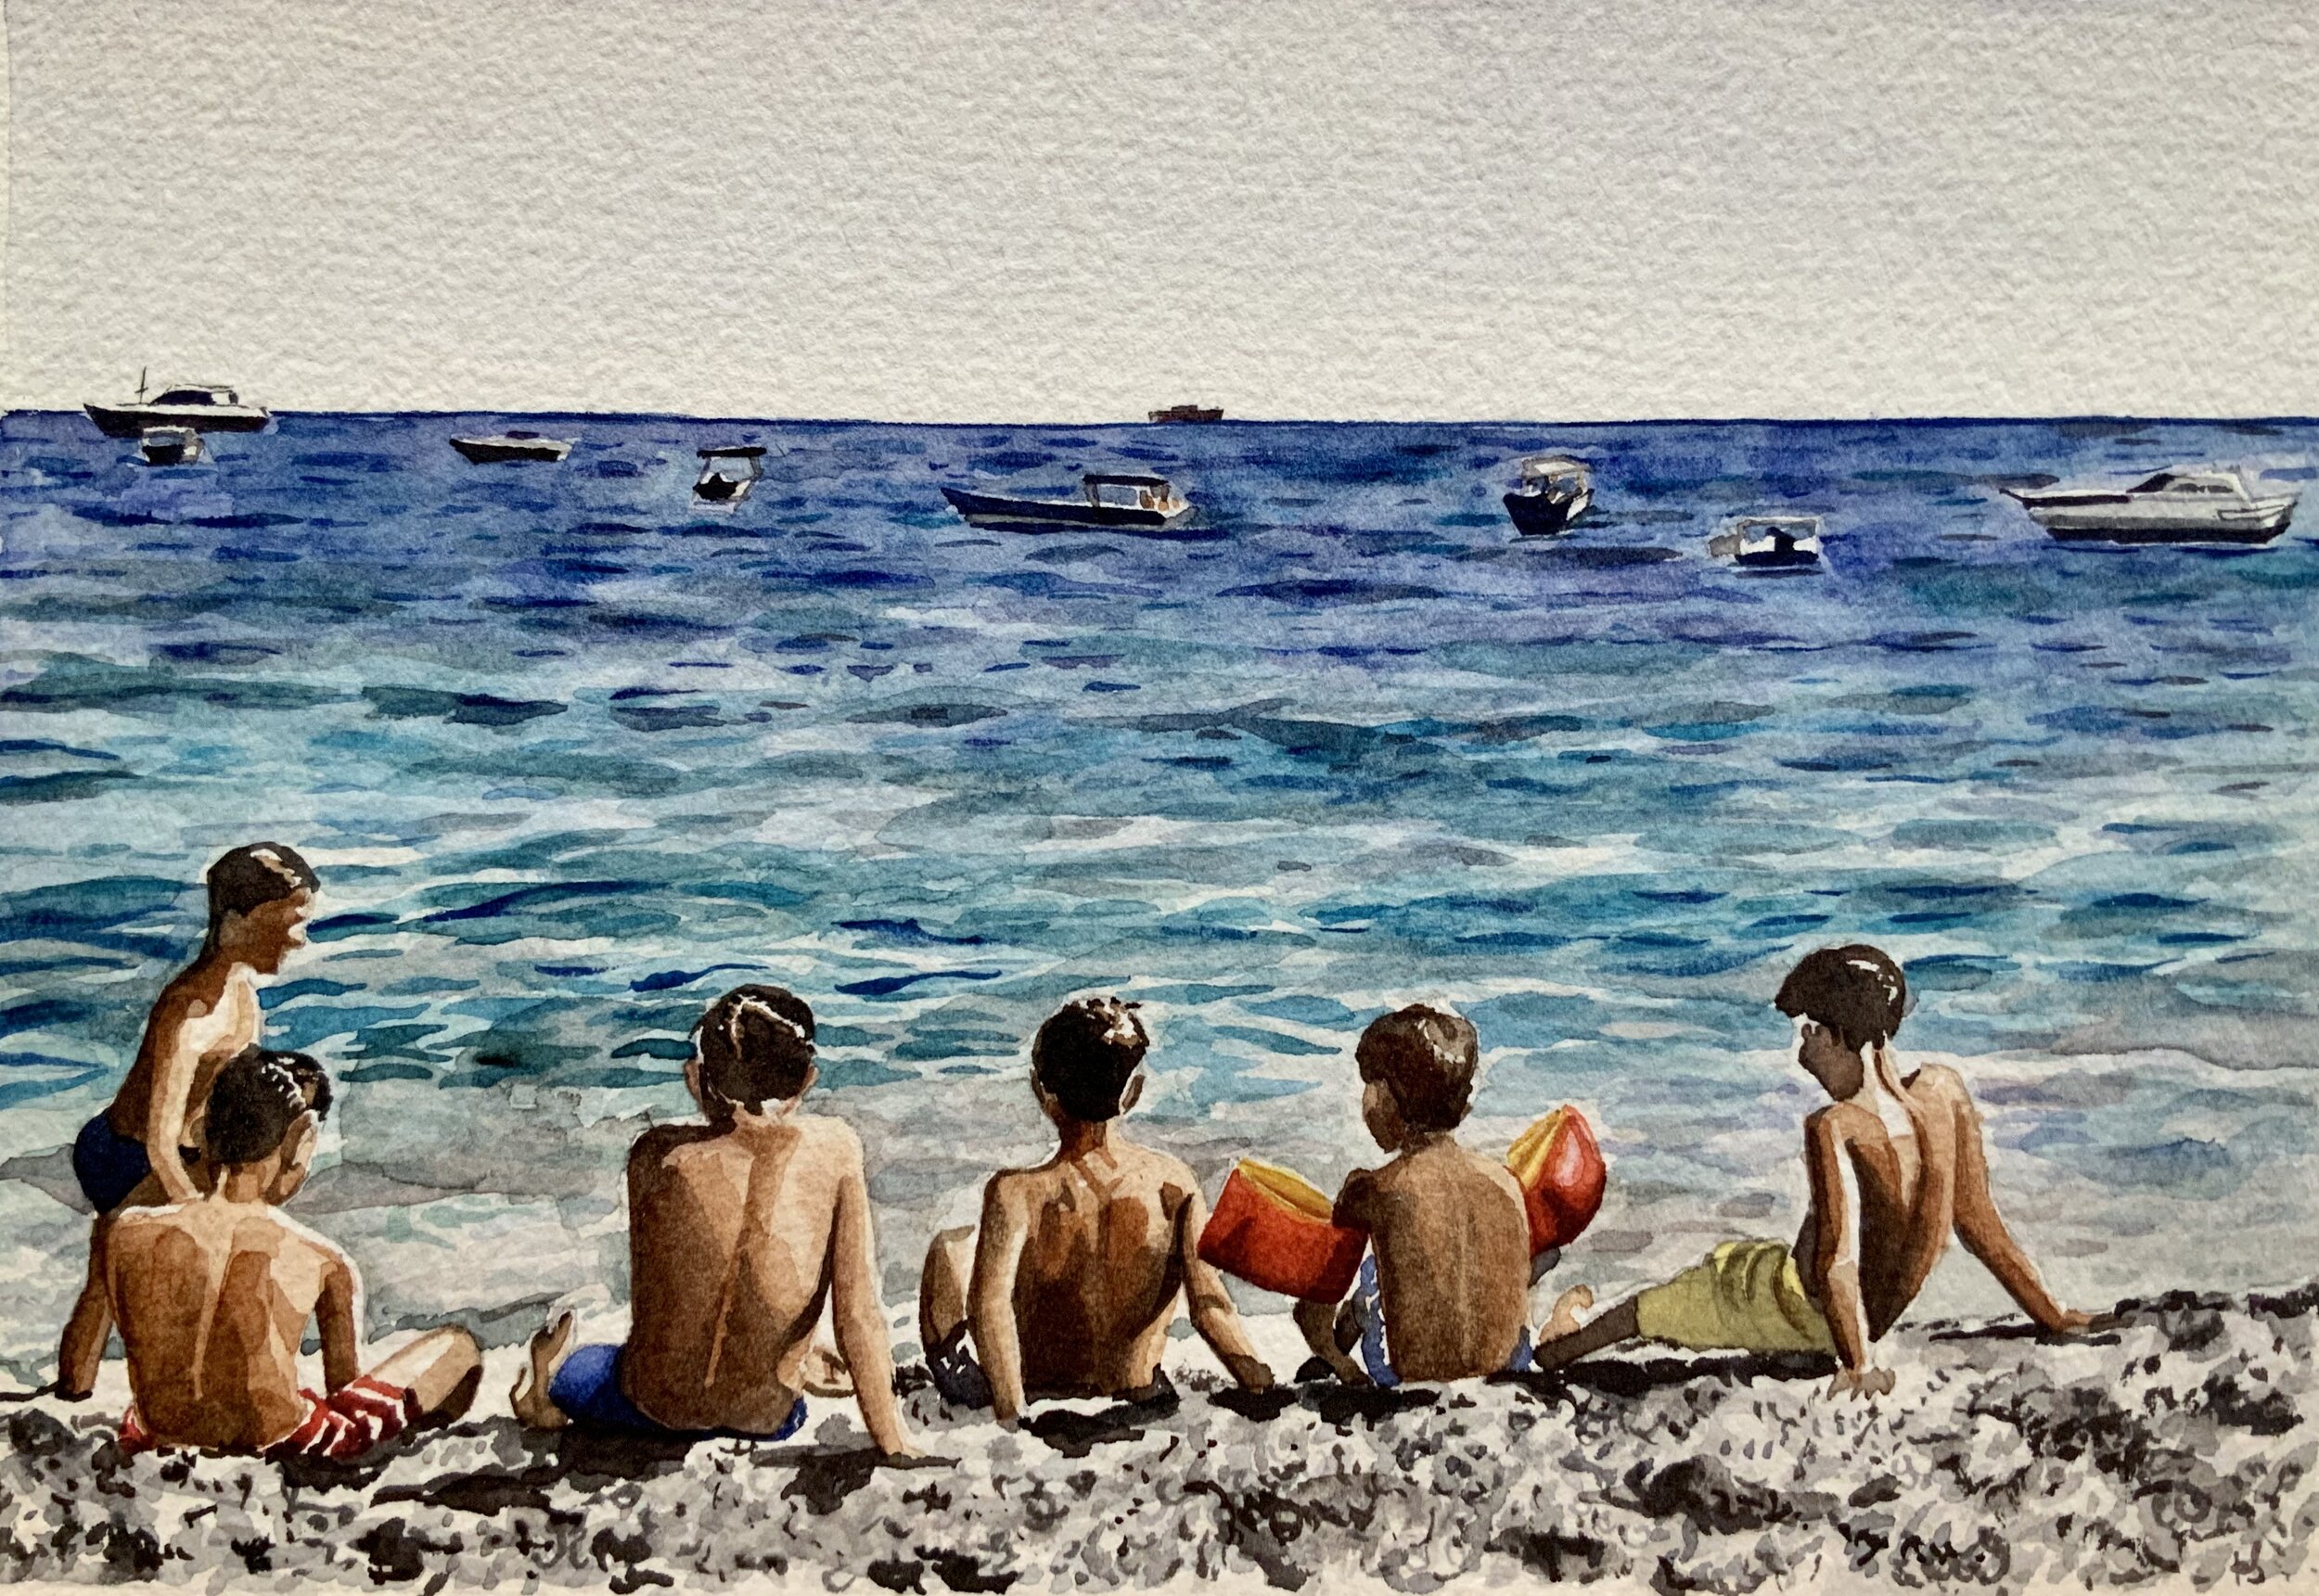 Boys on the beach, Positano (after Sarah) 	2019